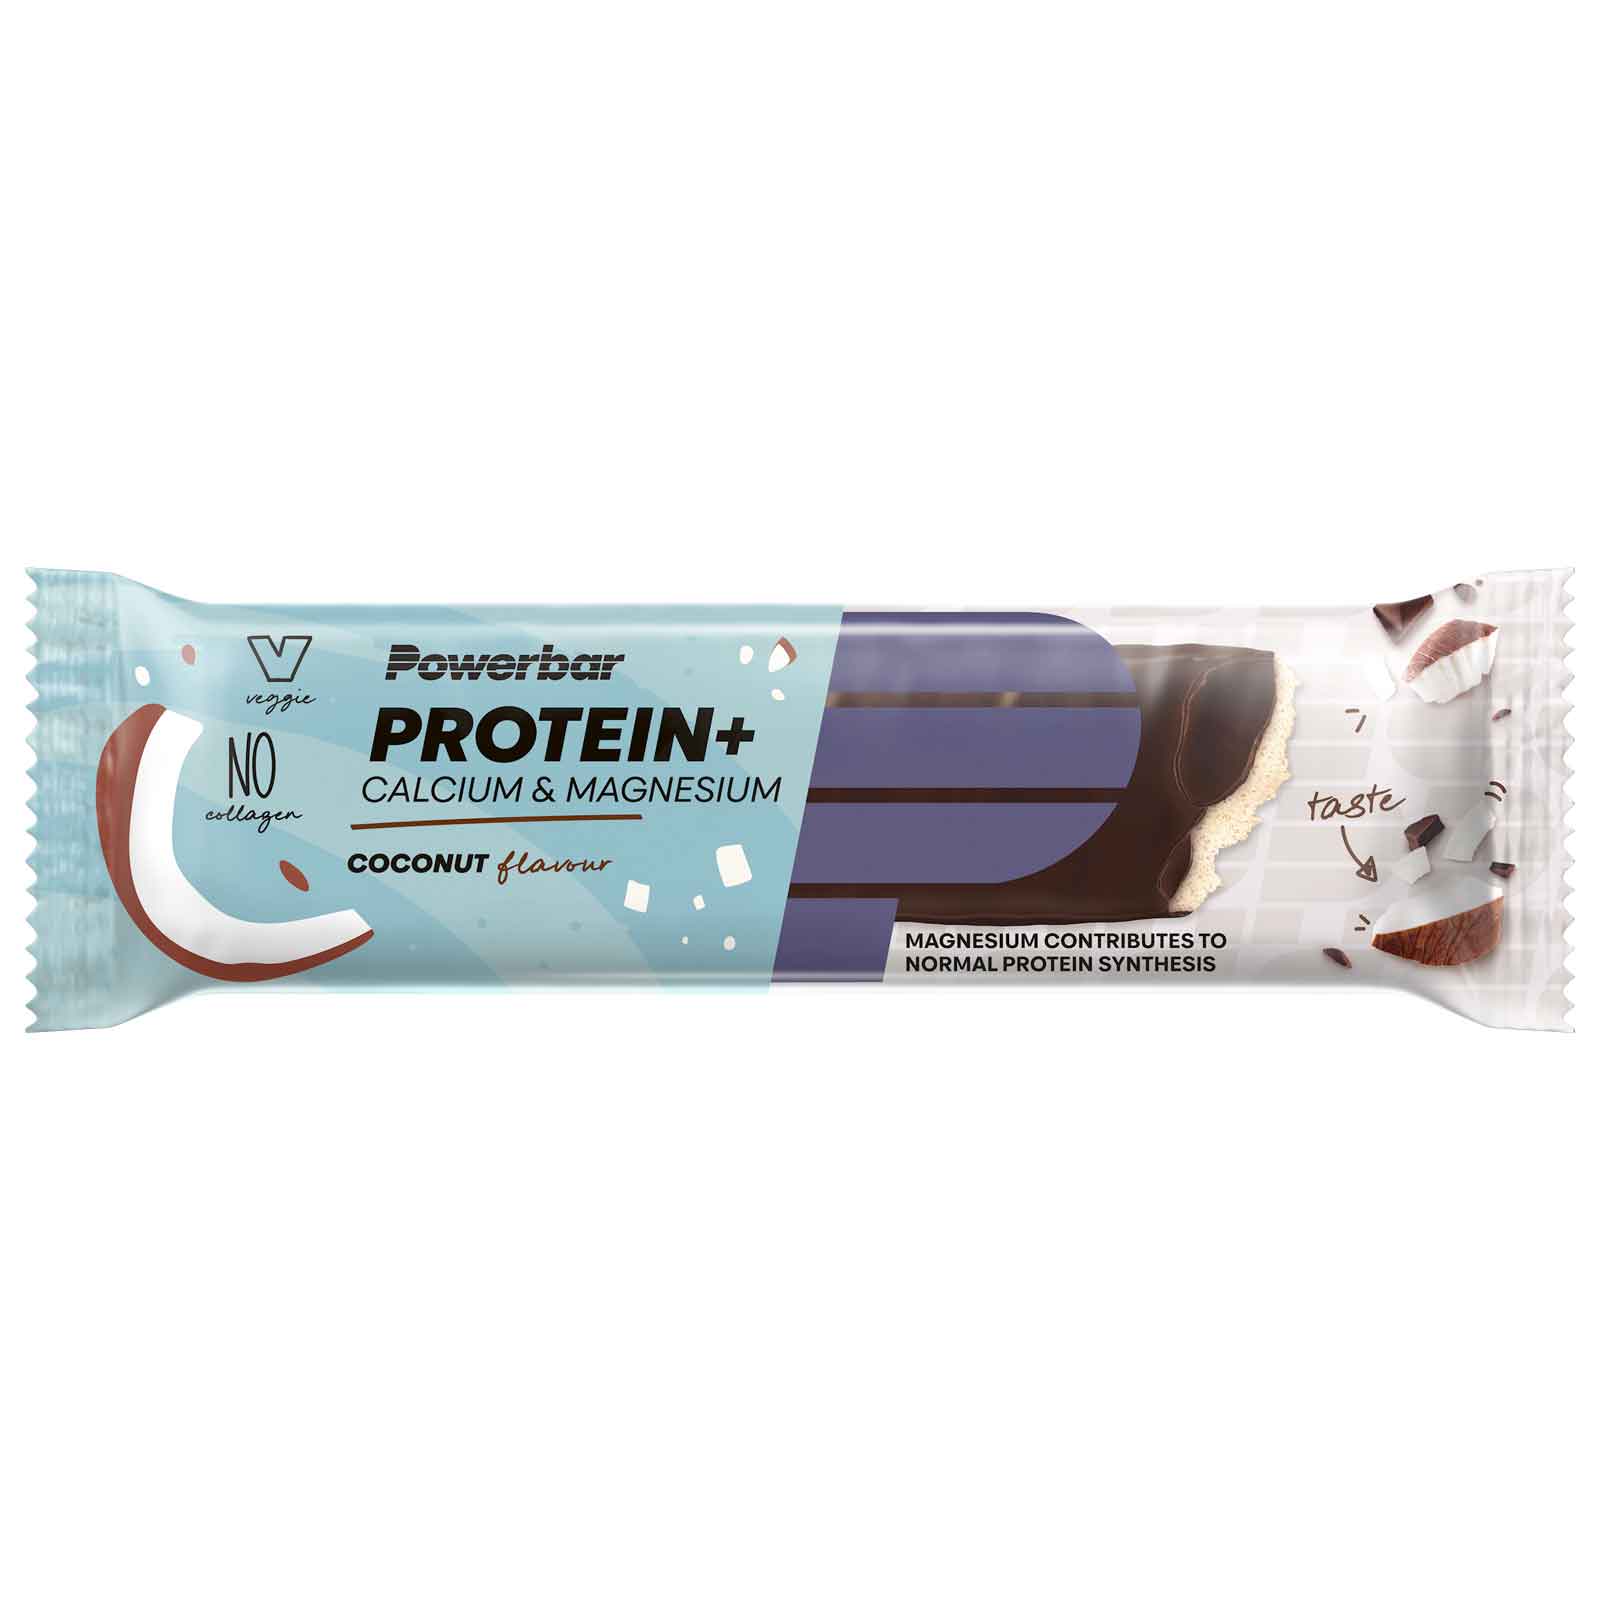 Produktbild von Powerbar Protein Plus Calcium Magnesium - Eiweiß-Riegel - 3x35g